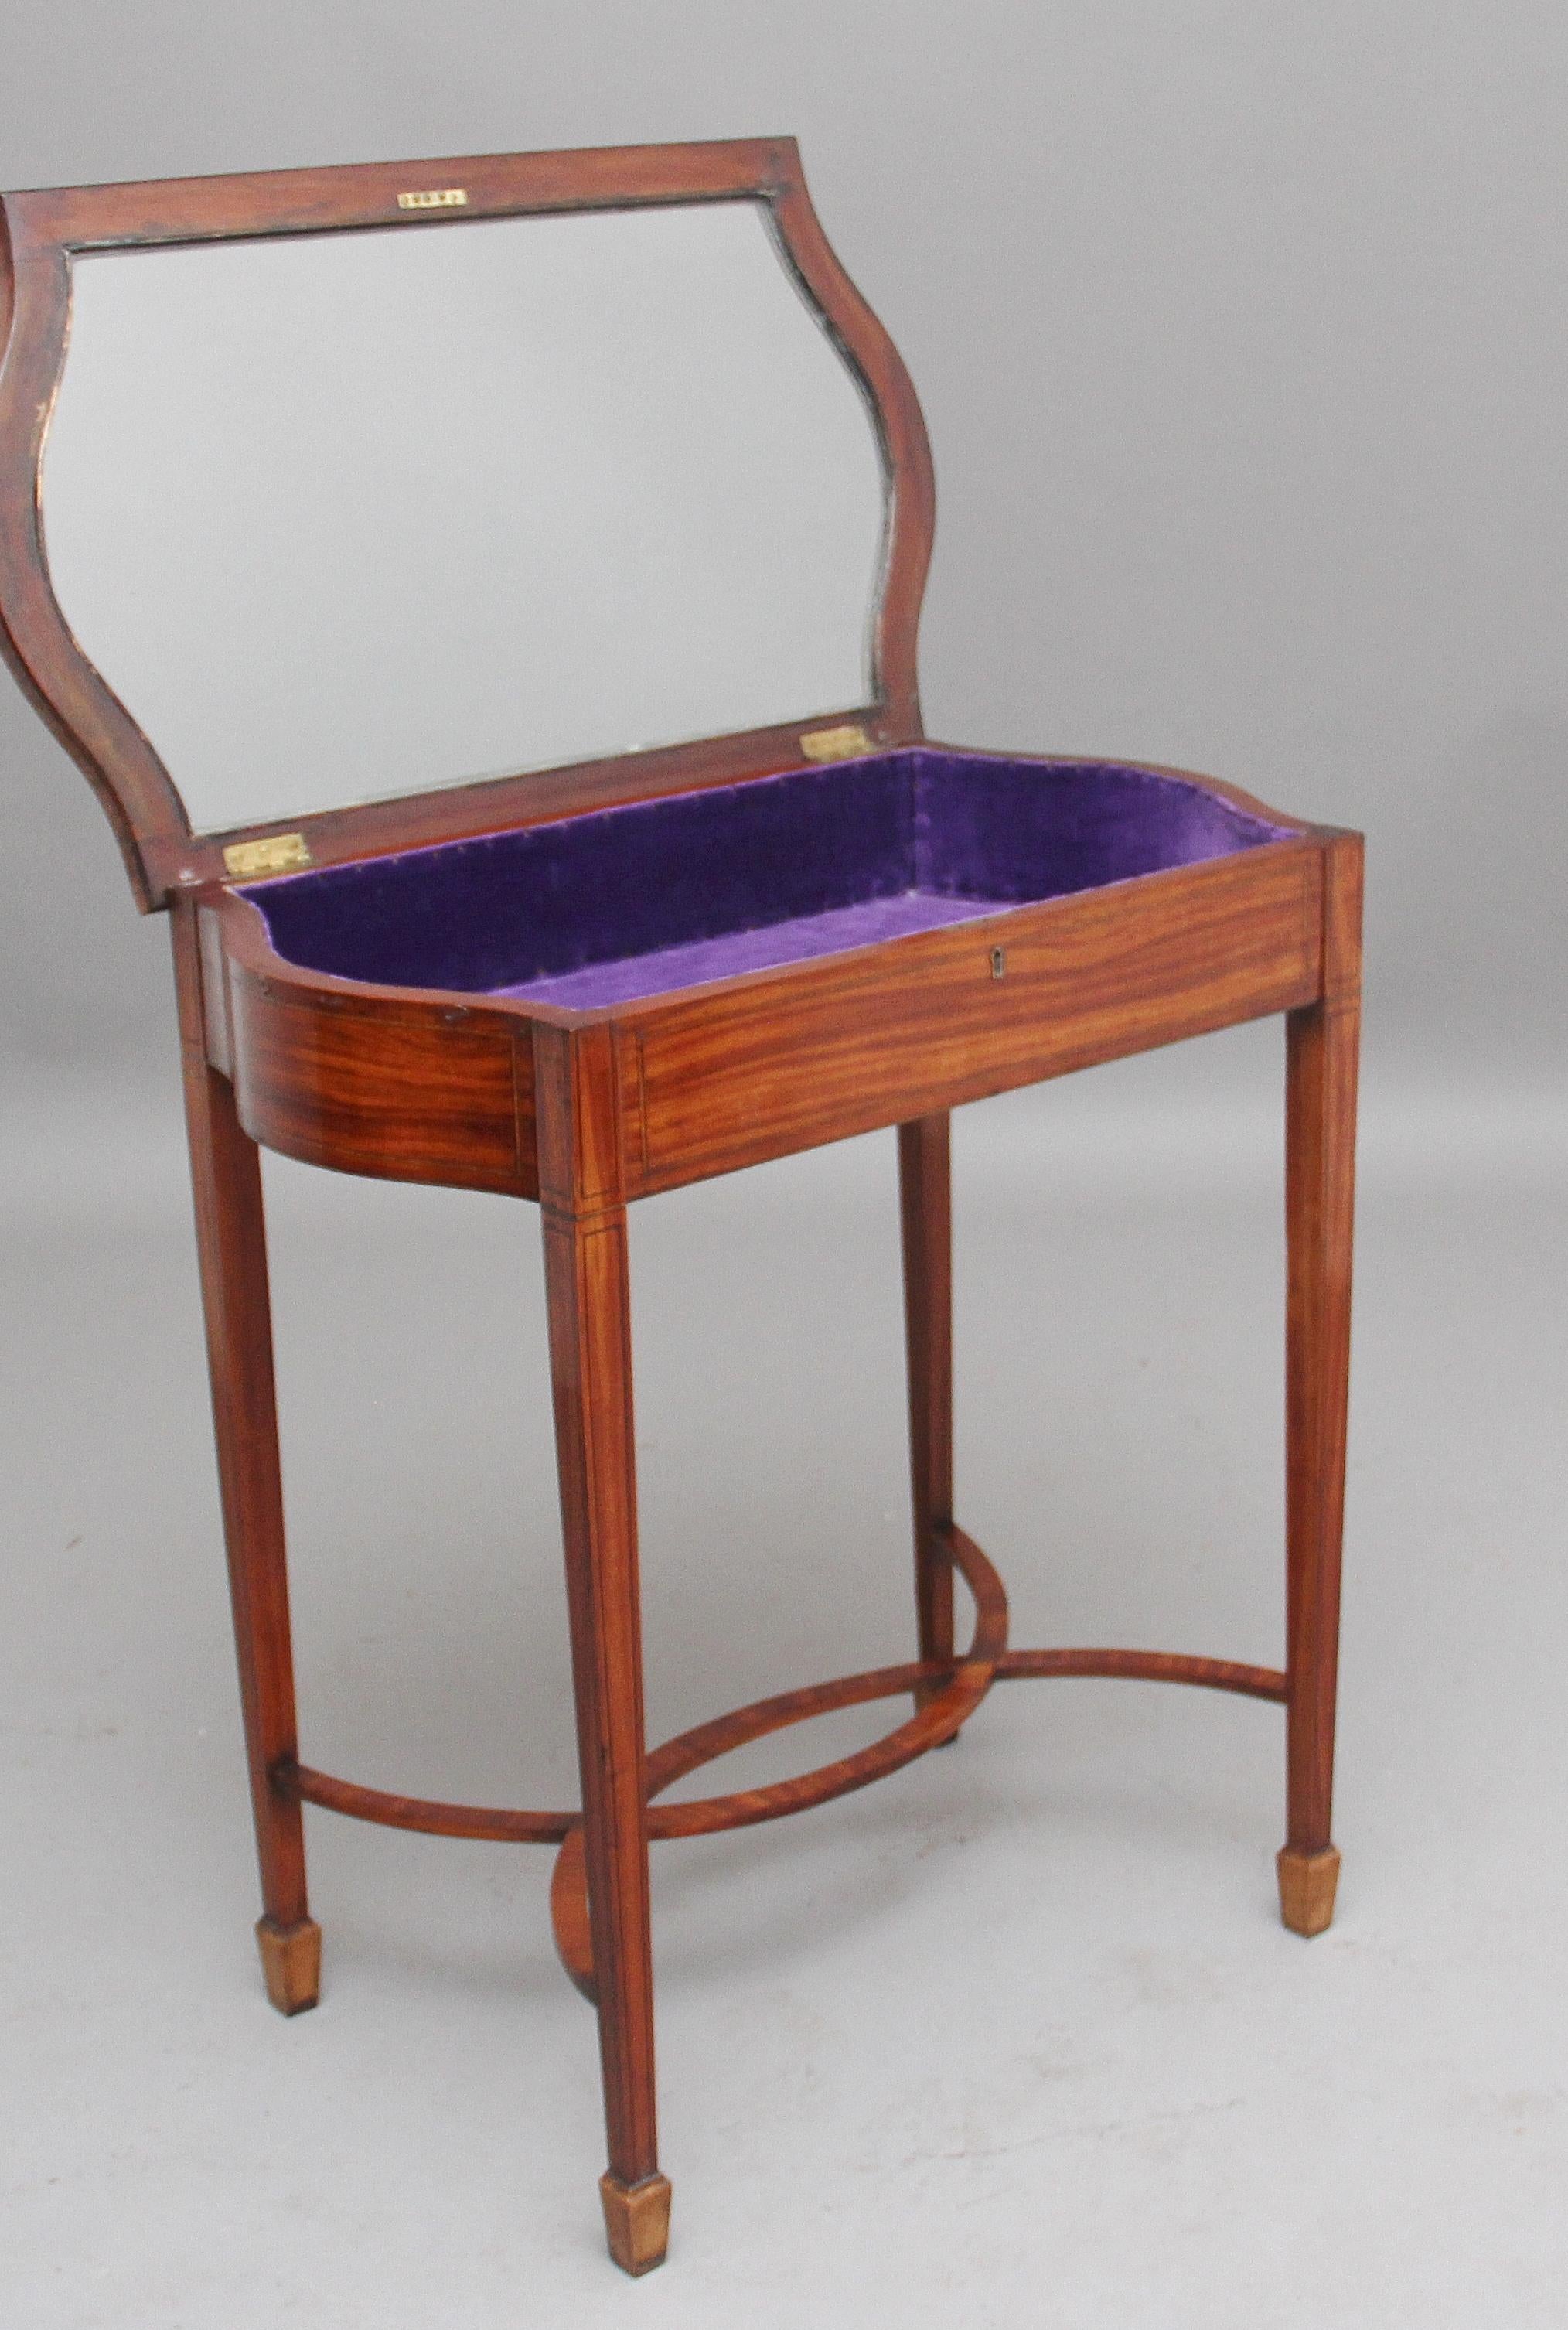 Table de bijouterie / présentoir en bois satiné incrusté du début du 20e siècle, le plateau vitré à charnière s'ouvrant pour révéler l'espace de présentation avec une doublure en velours violet à l'intérieur, le plateau ayant des extrémités en forme